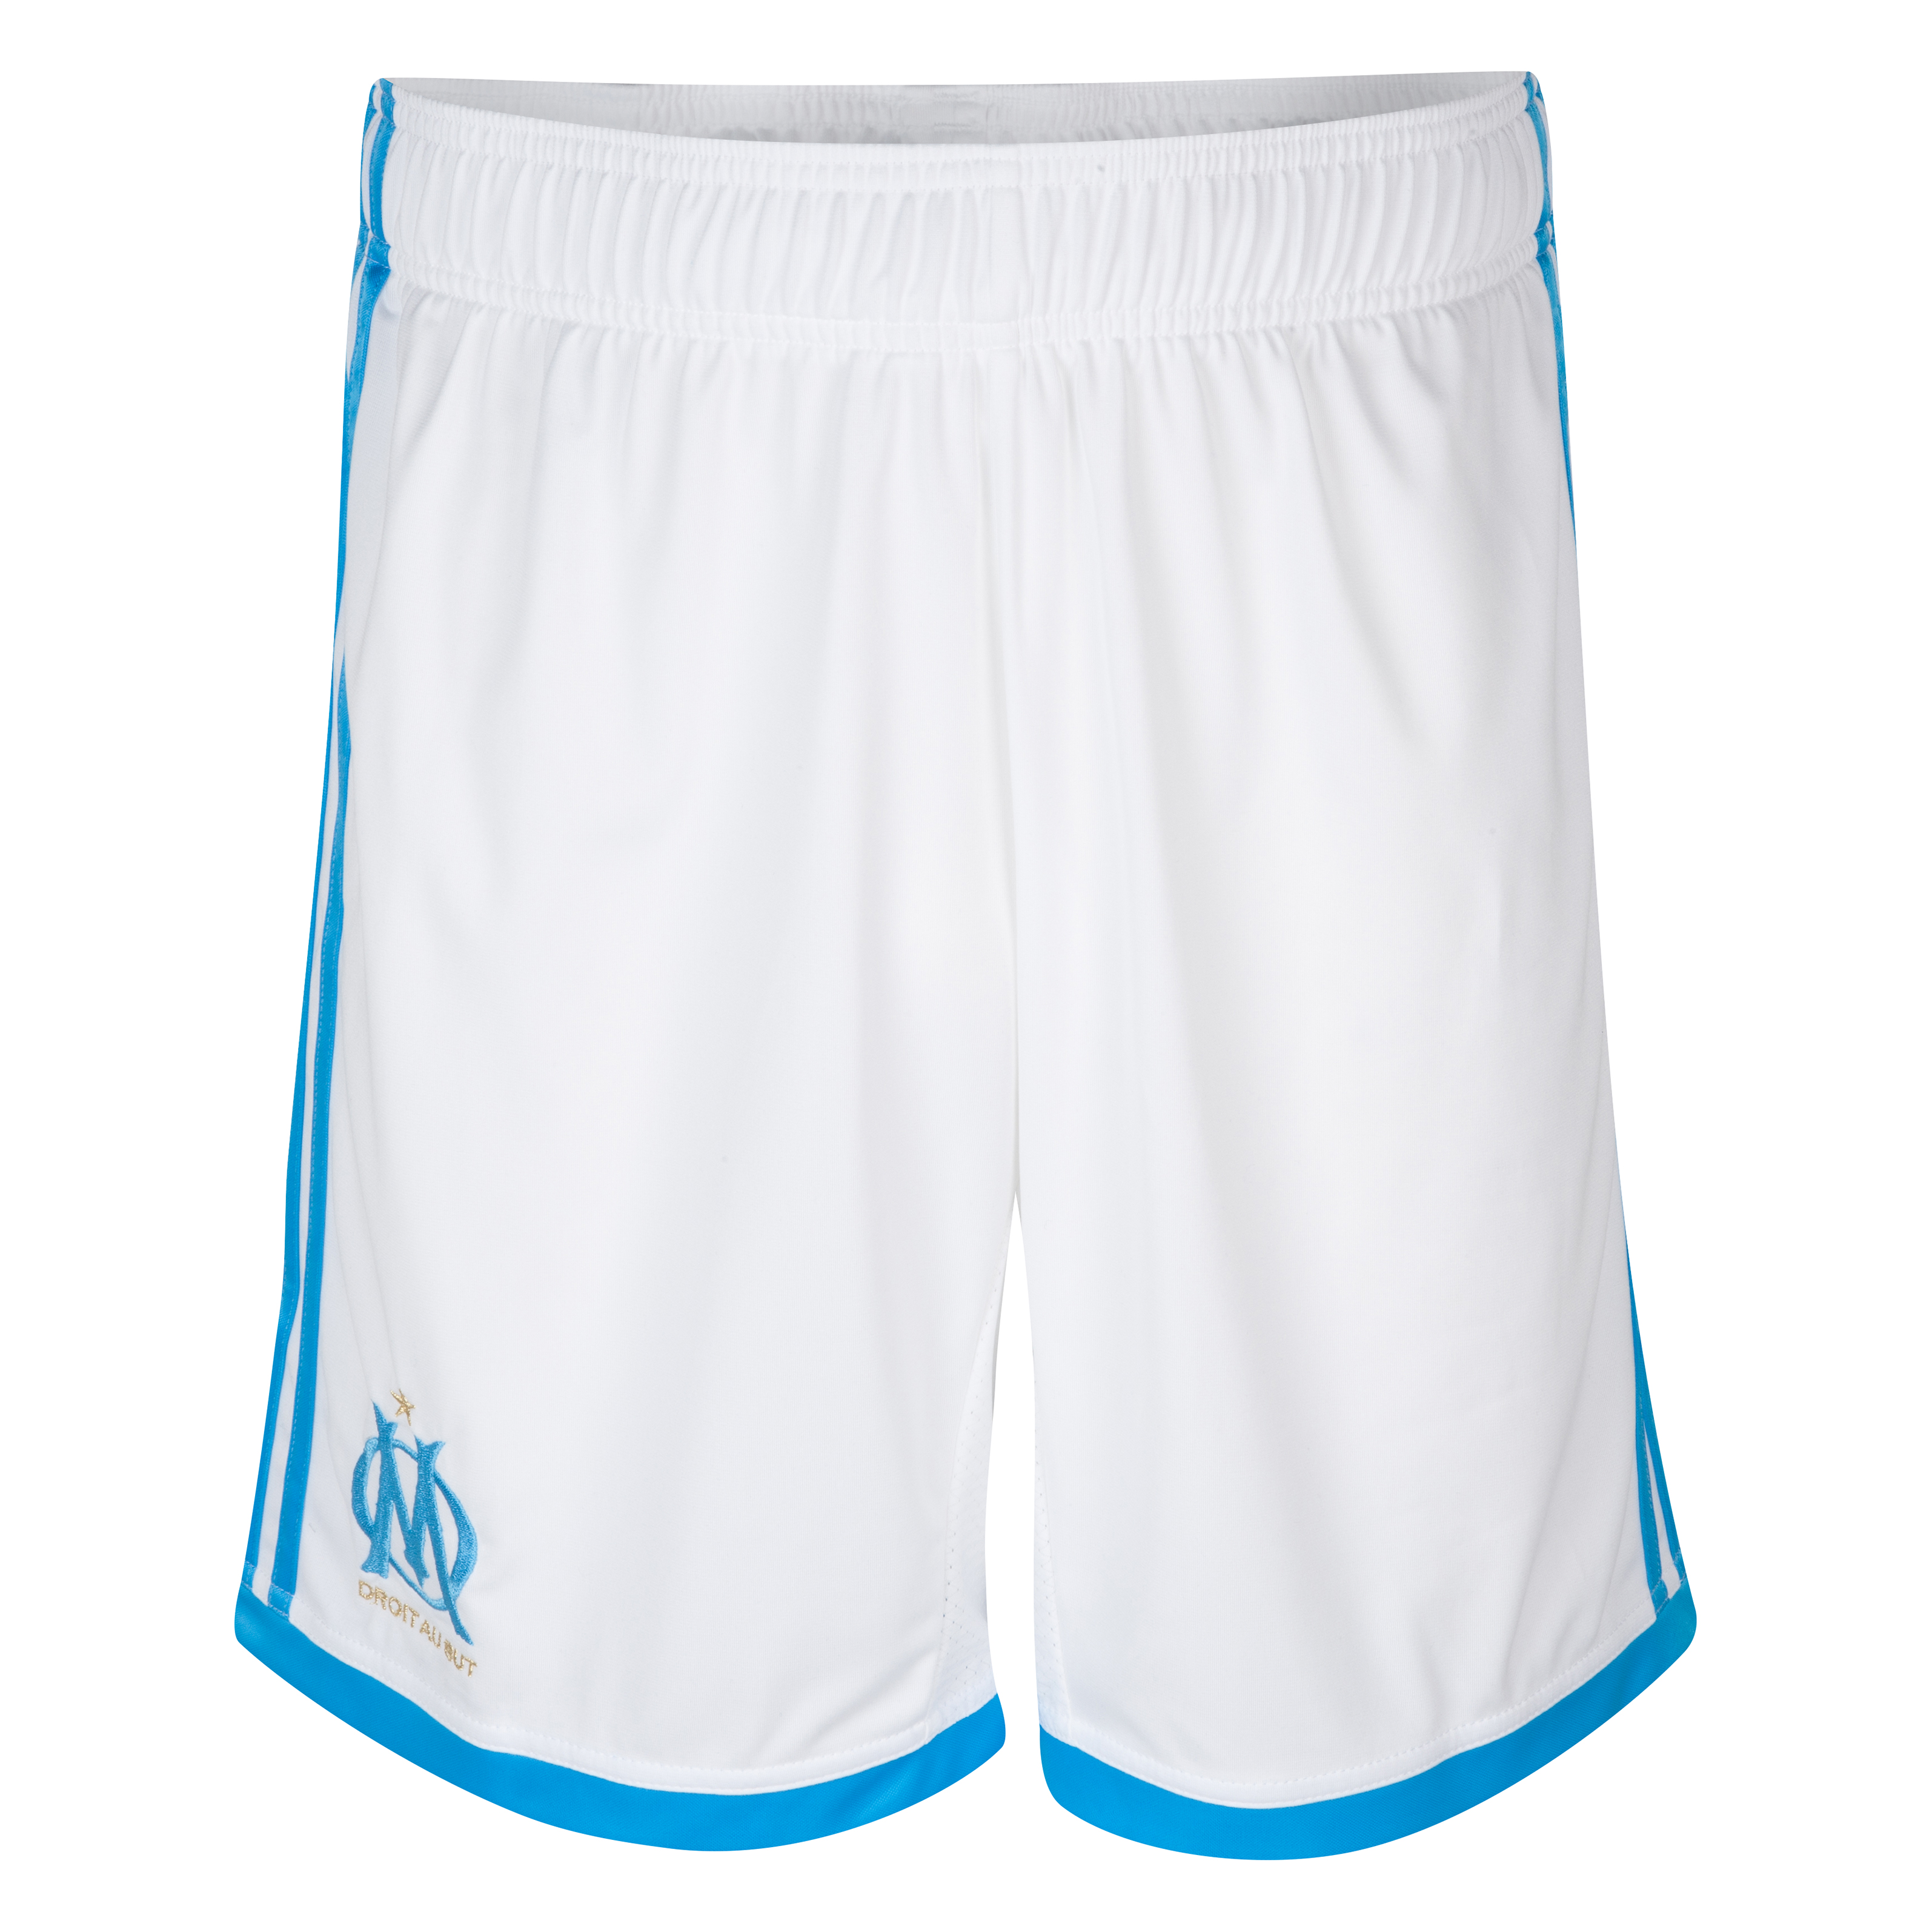 Olympique de Marseille Home Shorts 2013/14 - Mens White